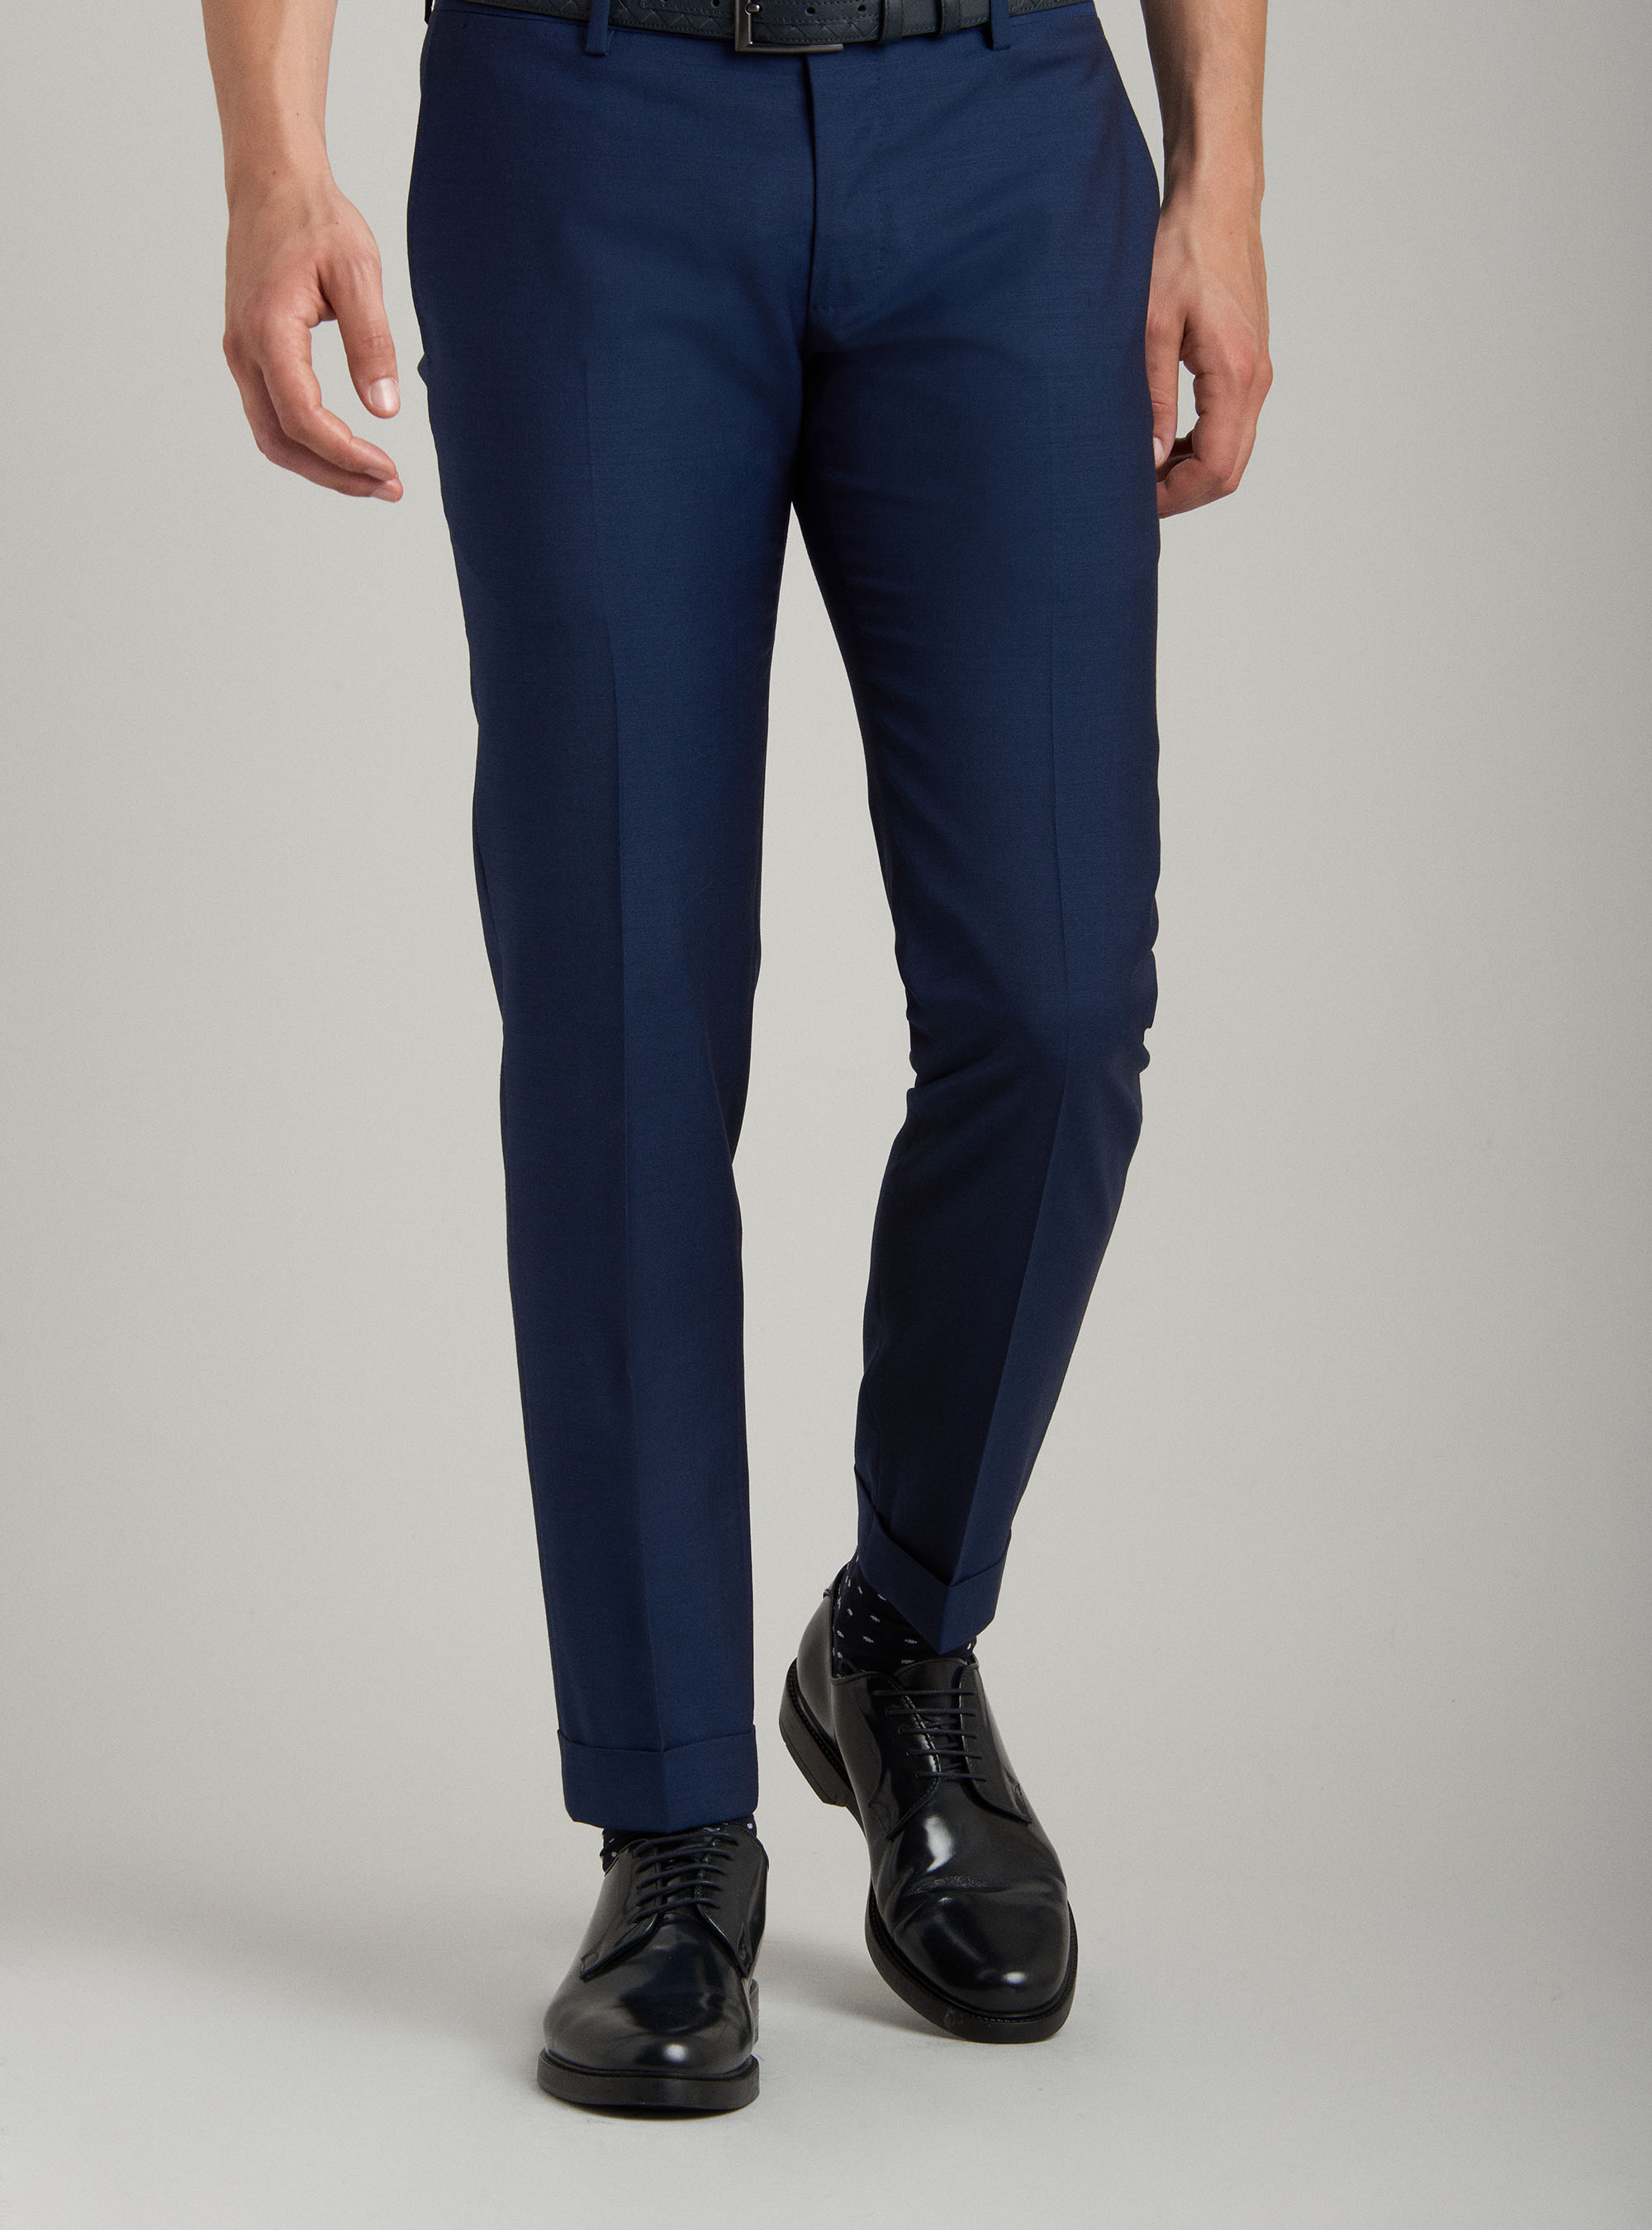 Gutteridge - Pantaloni per abito in fresco lana super fine 120's, Unisex, Basalto, Taglia: 50